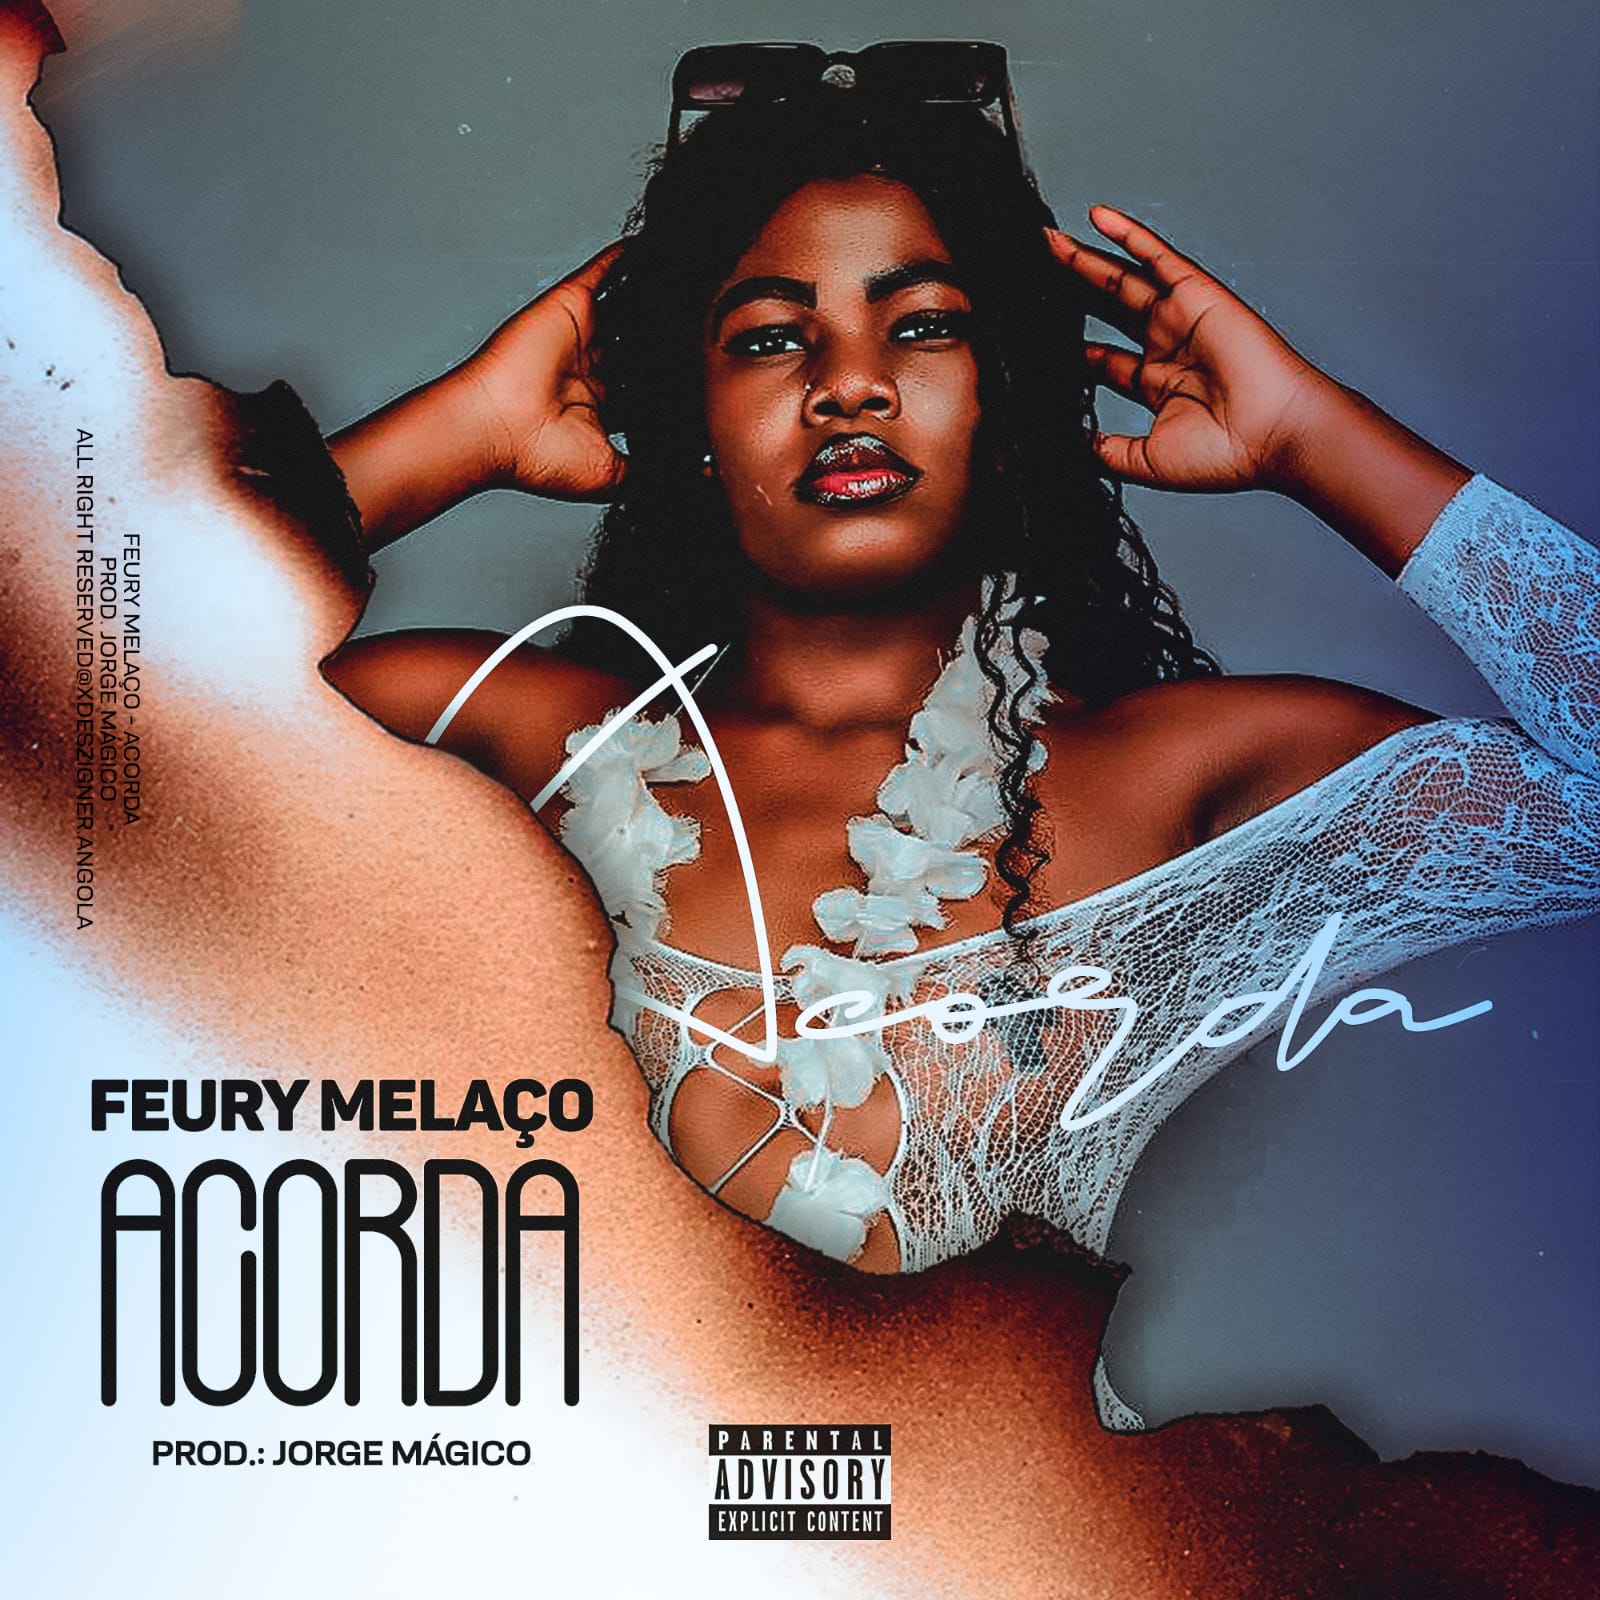 Feury Melaço - Acorda download